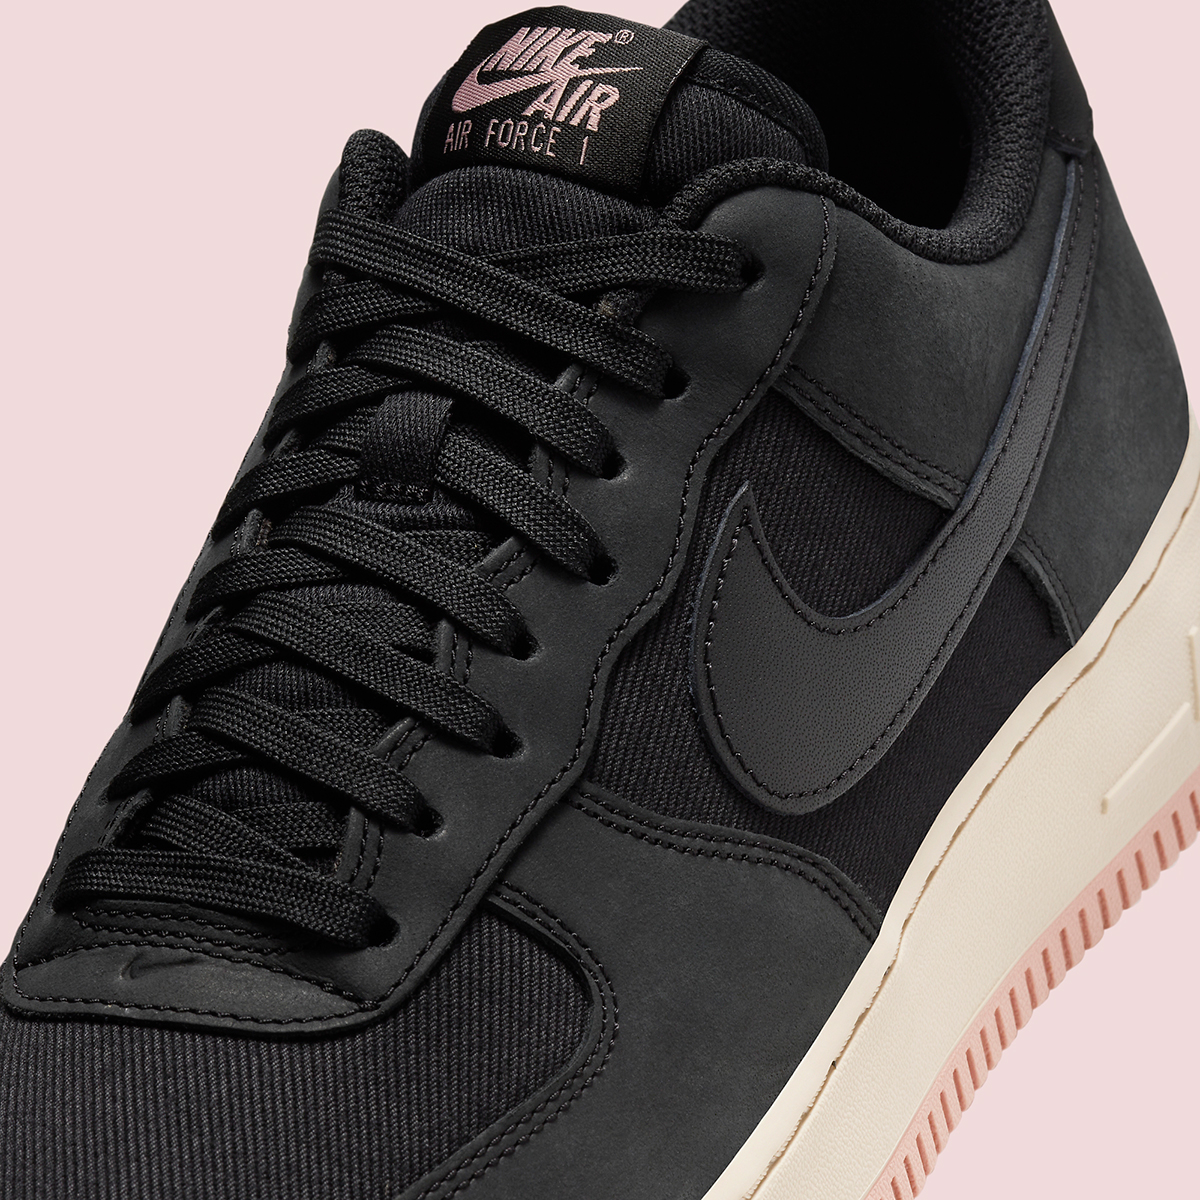 Nike Air Force 1 Low Premium Black Pink Fb8876 001 4